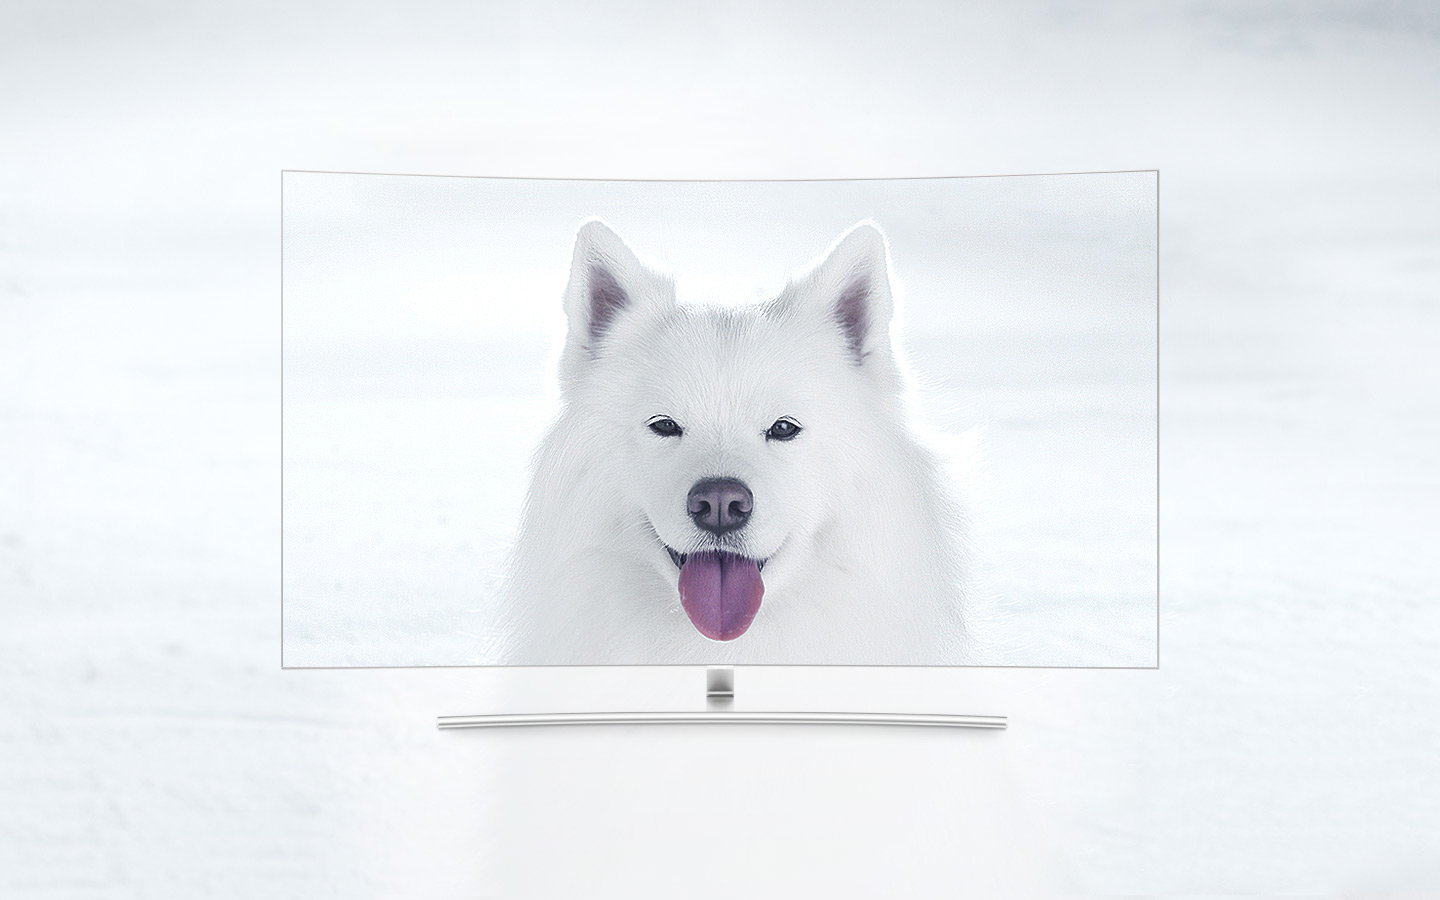 TV QLED Curva vista de frente e o ecrã mostra um cachorro branco num campo de neve. Quanto mais nos aproximamos dos 1500 nits, mais se distingue o pêlo do cachorro da neve, o que não se conseguia ao início.